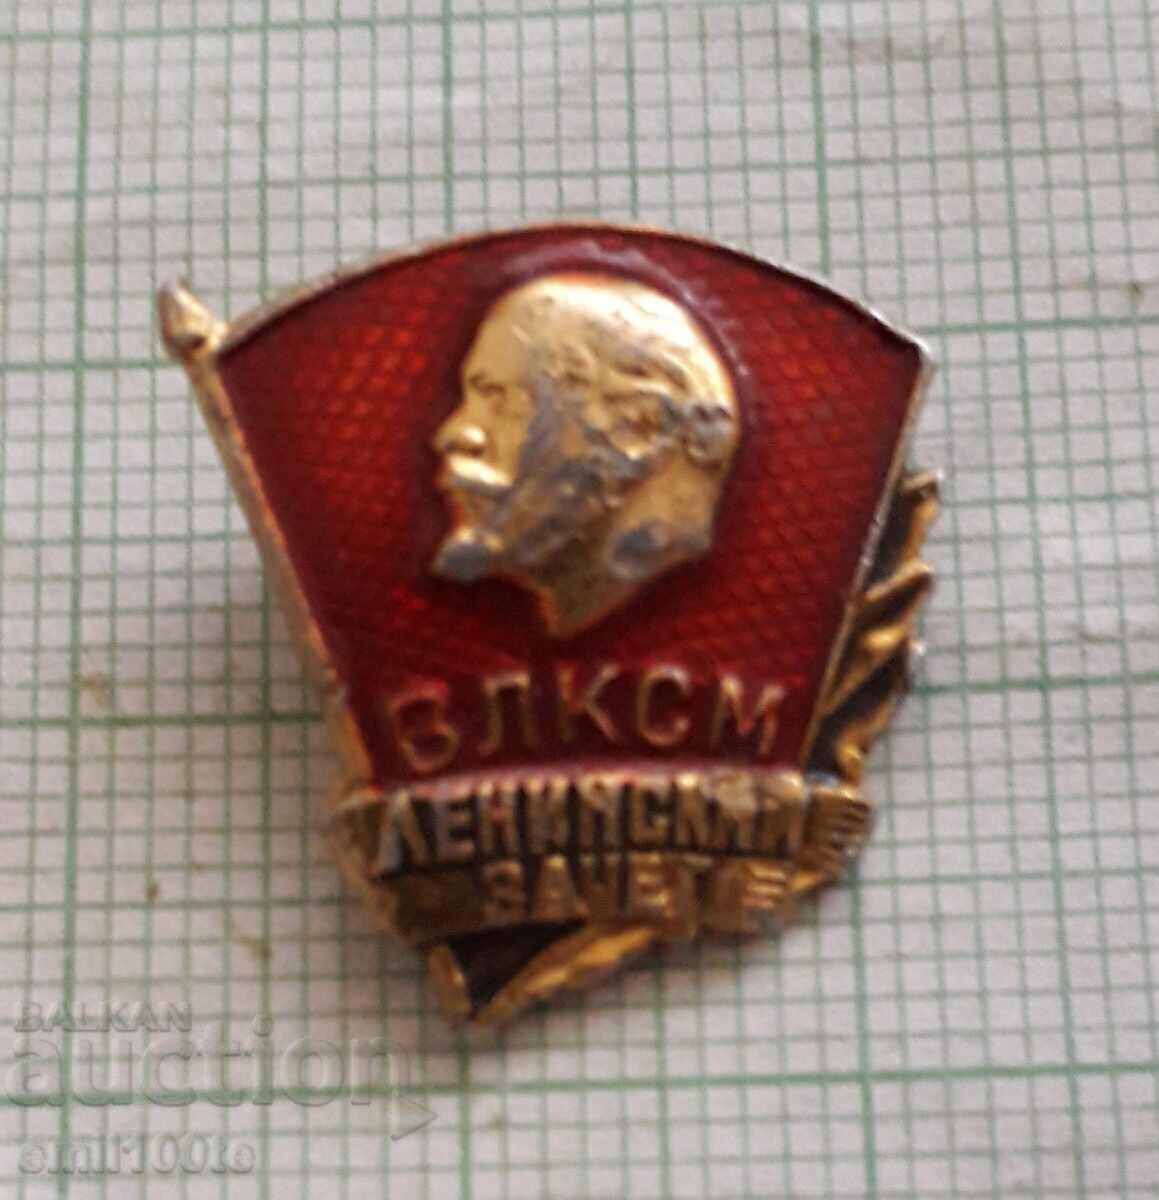 Badge - VLKSM Leninsky zachet